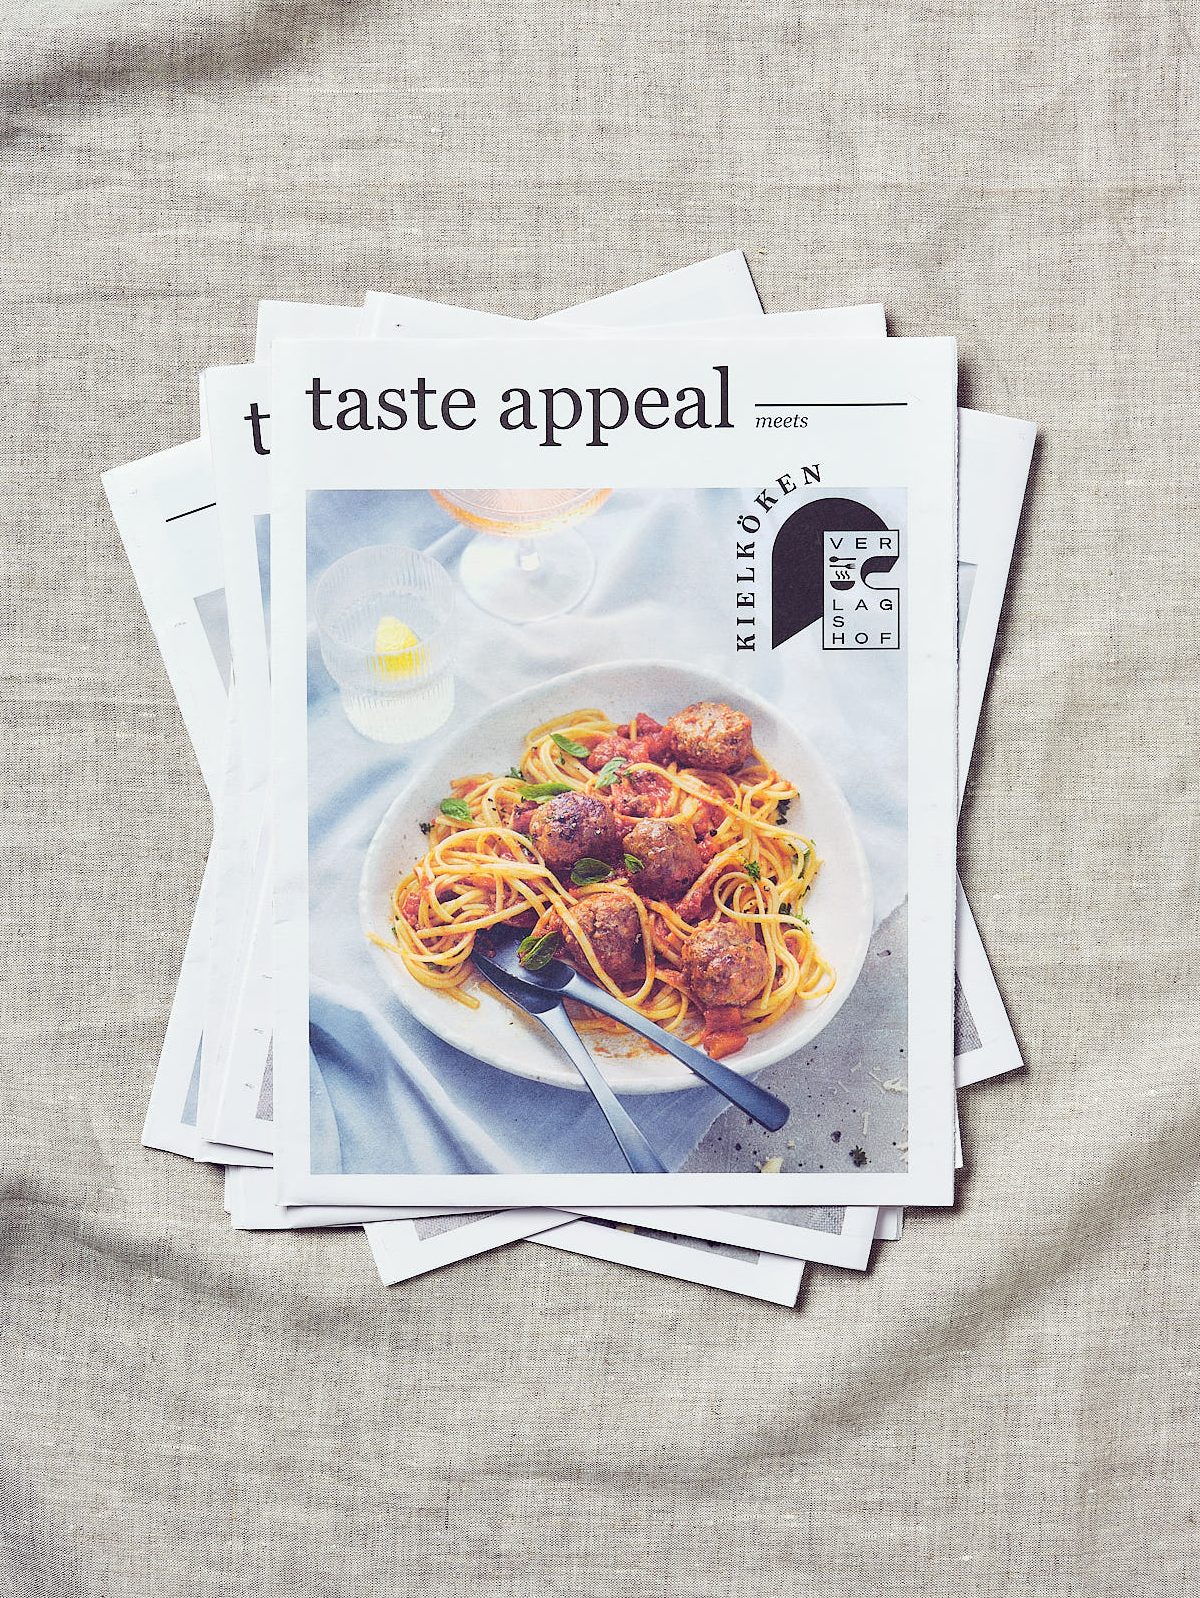 Aufsichtige Aufnahme des taste appeal– Covers der Ausgabe KielKöken produziert von Studio Hackenberg